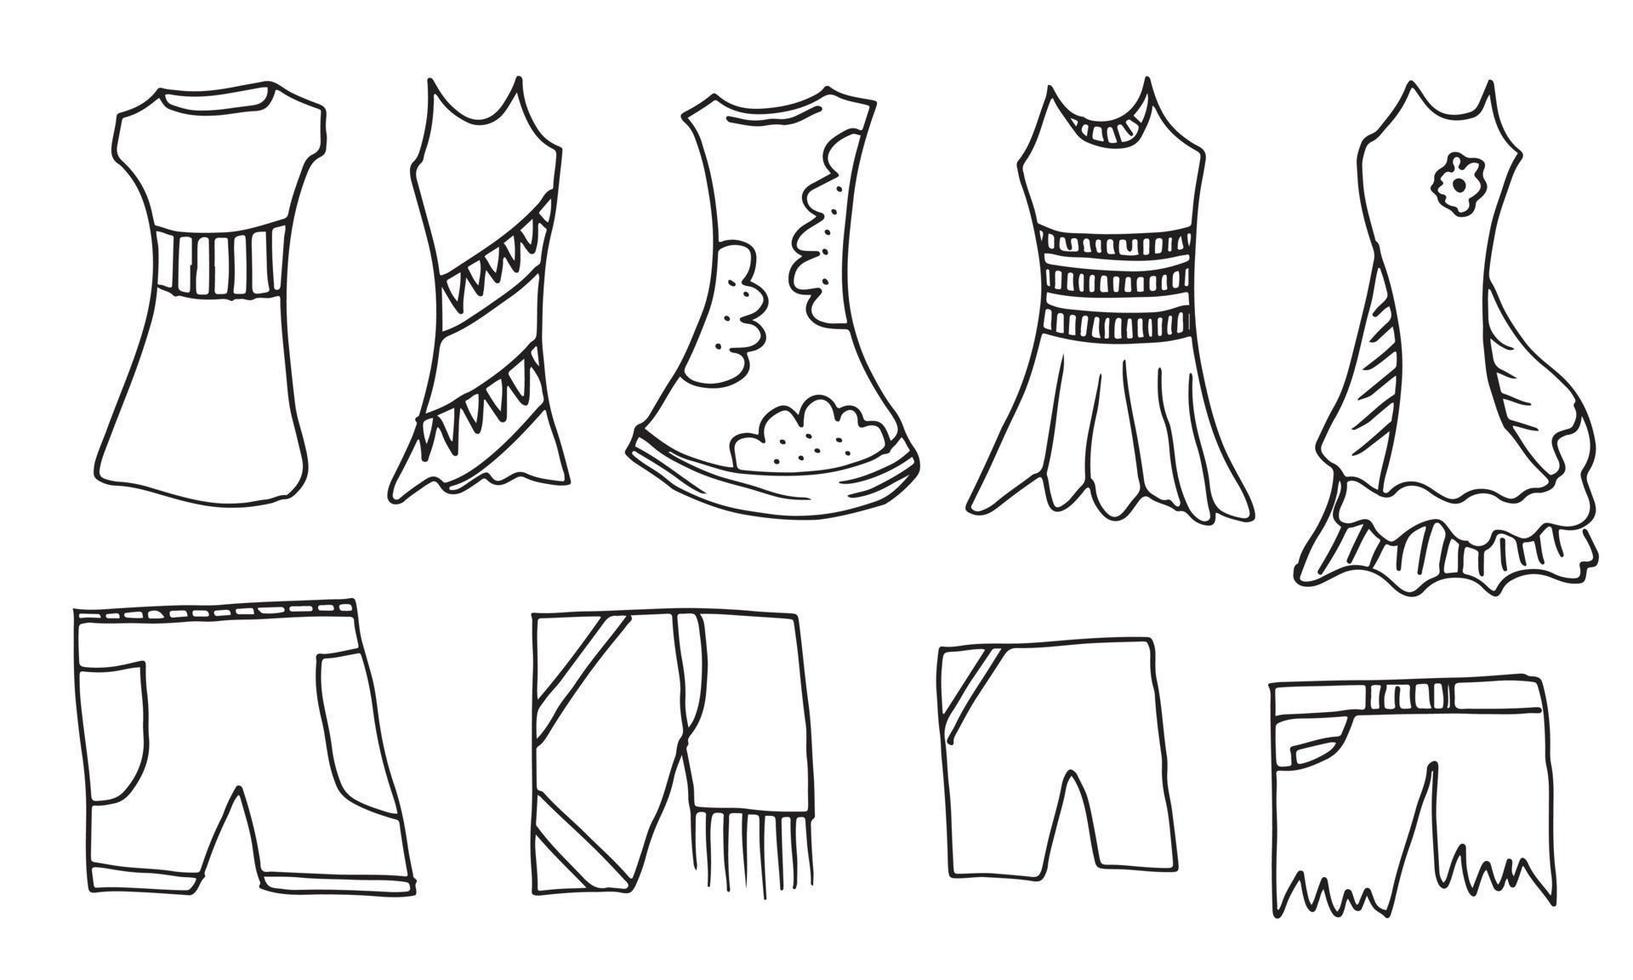 doodle desenho de mão com roupas de criança. ilustração vetorial de linhas e páginas para colorir para crianças vetor